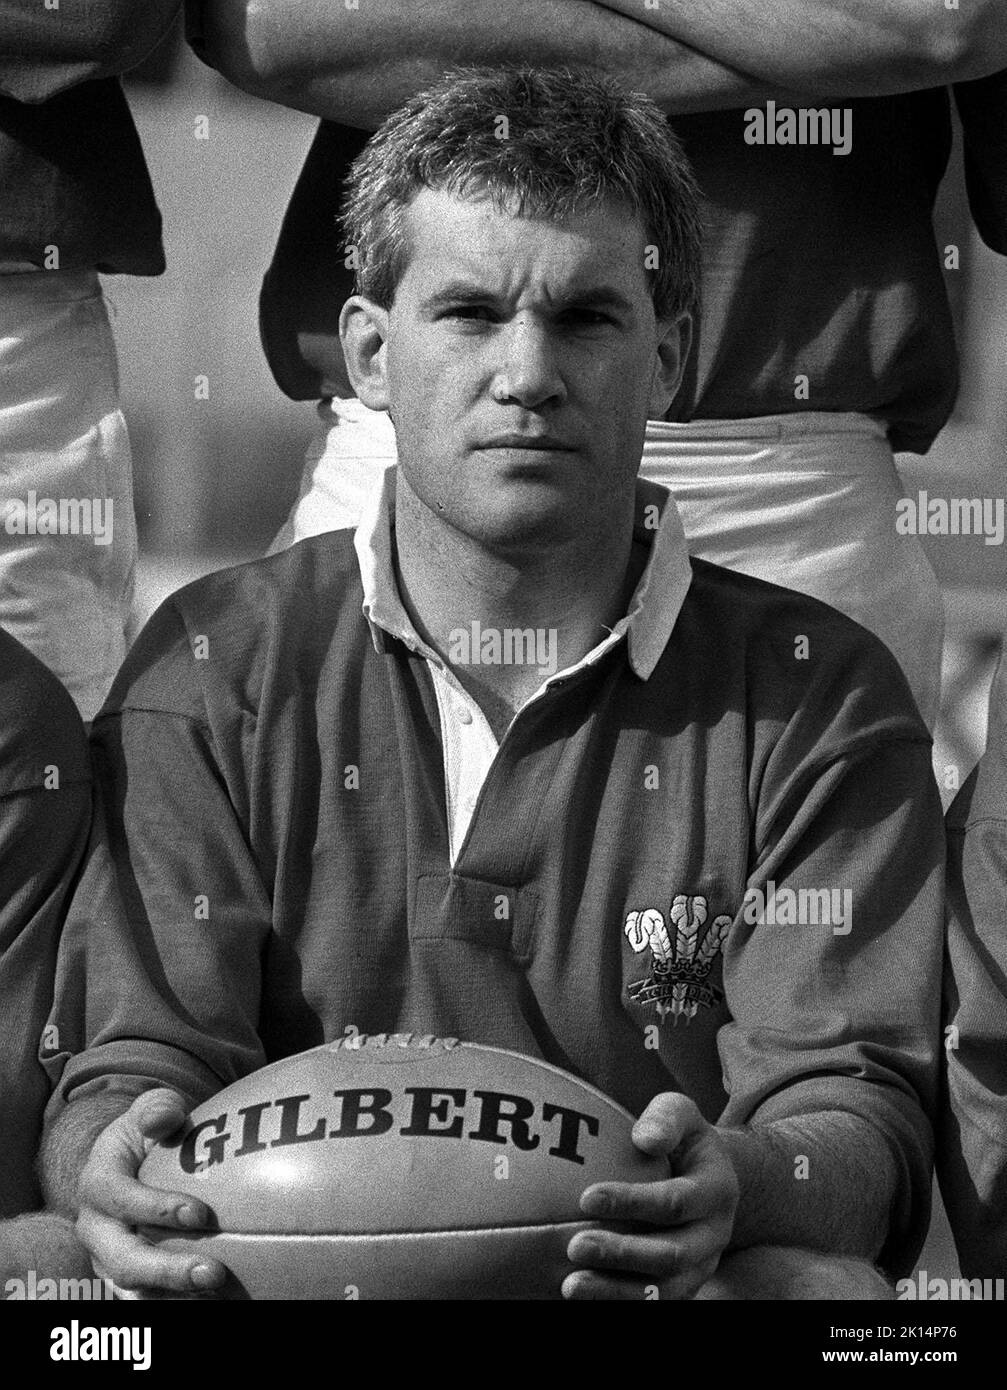 Foto del file datata 23-02-1984 dell'ex capitano del Galles e commentatore di rugby Eddie Butler, morto a 65 anni, la BBC ha annunciato. Data di emissione: Giovedì 15 settembre 2022. Foto Stock